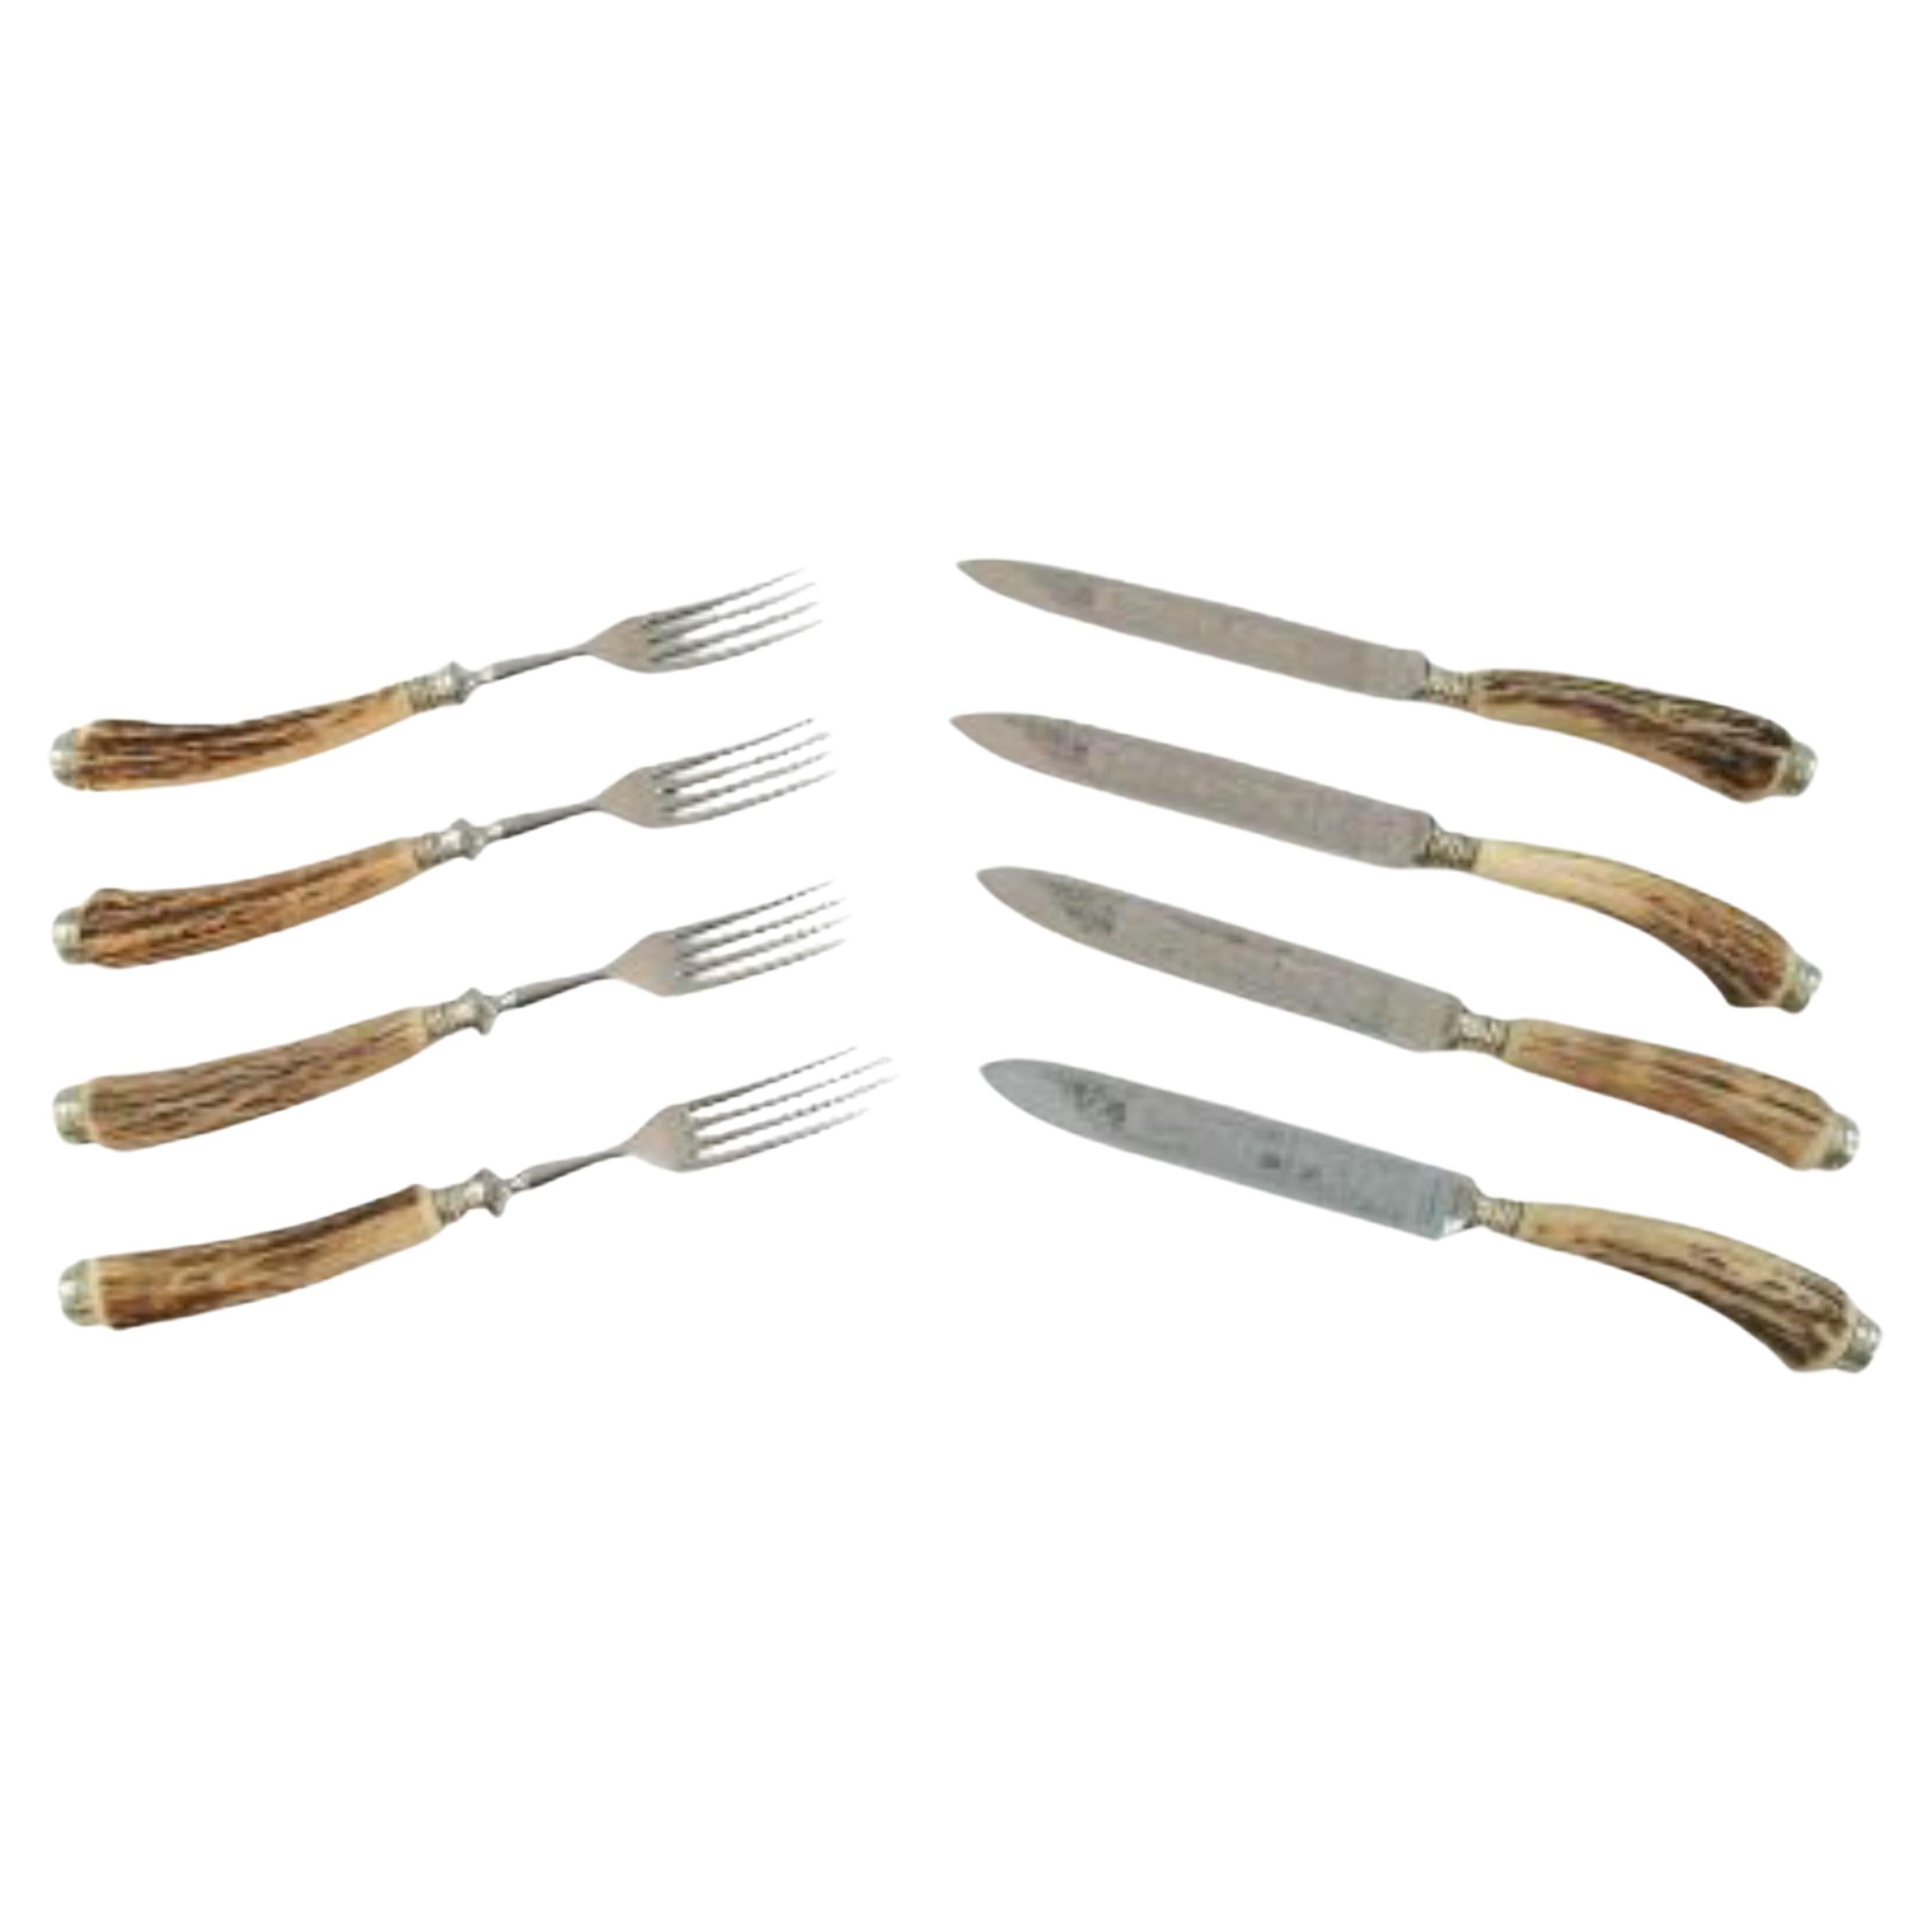 SOLINGEN - Set of 4 Horn Handled Steak Knives & Forks - Germany - Circa 1950's For Sale